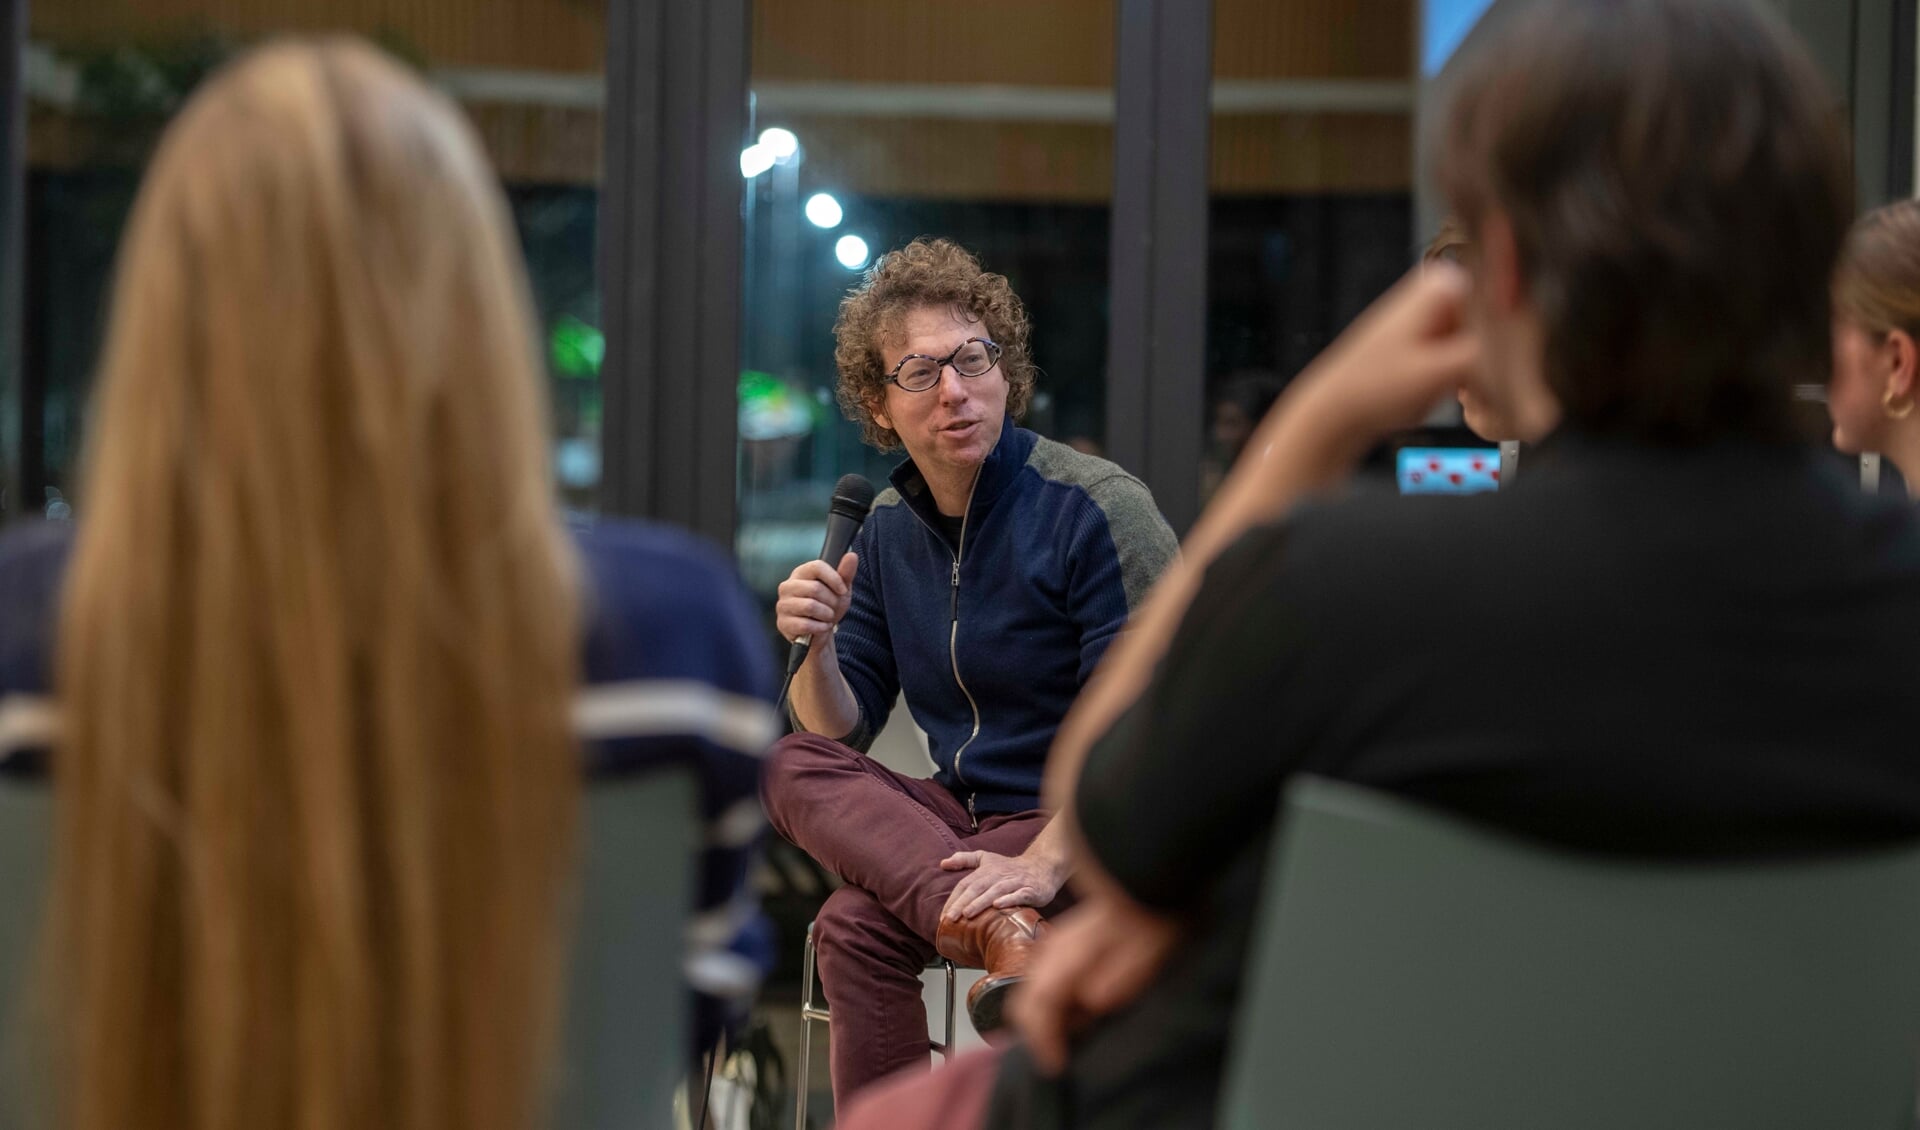 Schrijver Arnon Grunberg was woensdagavond te gast bij het Varendonck College in Asten. (Foto: Hein van Bakel)